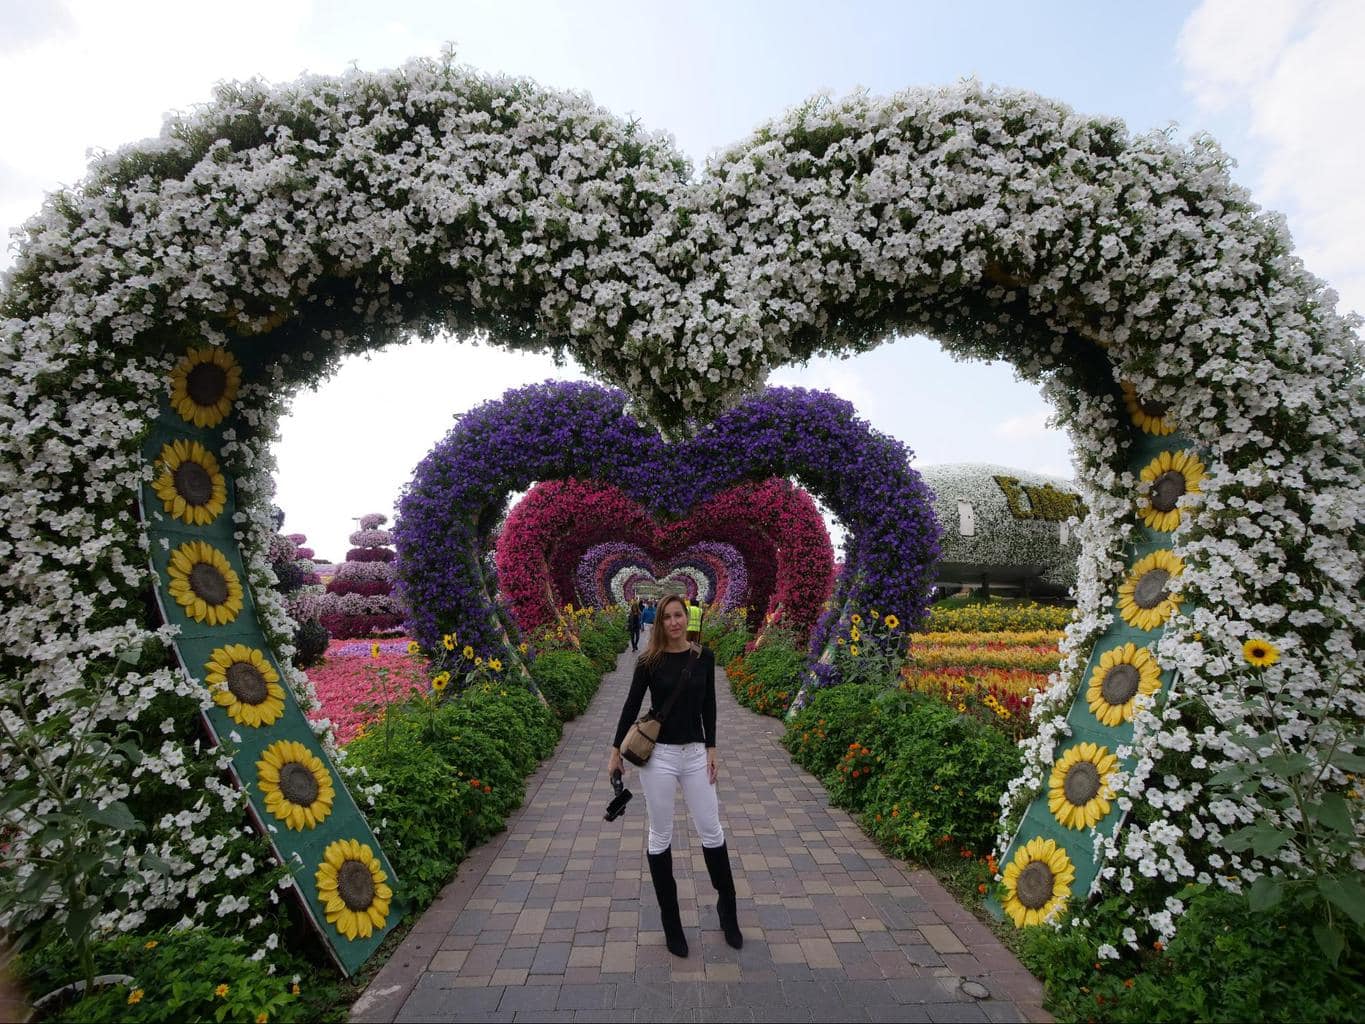 Dubai Miracle Garden flowers